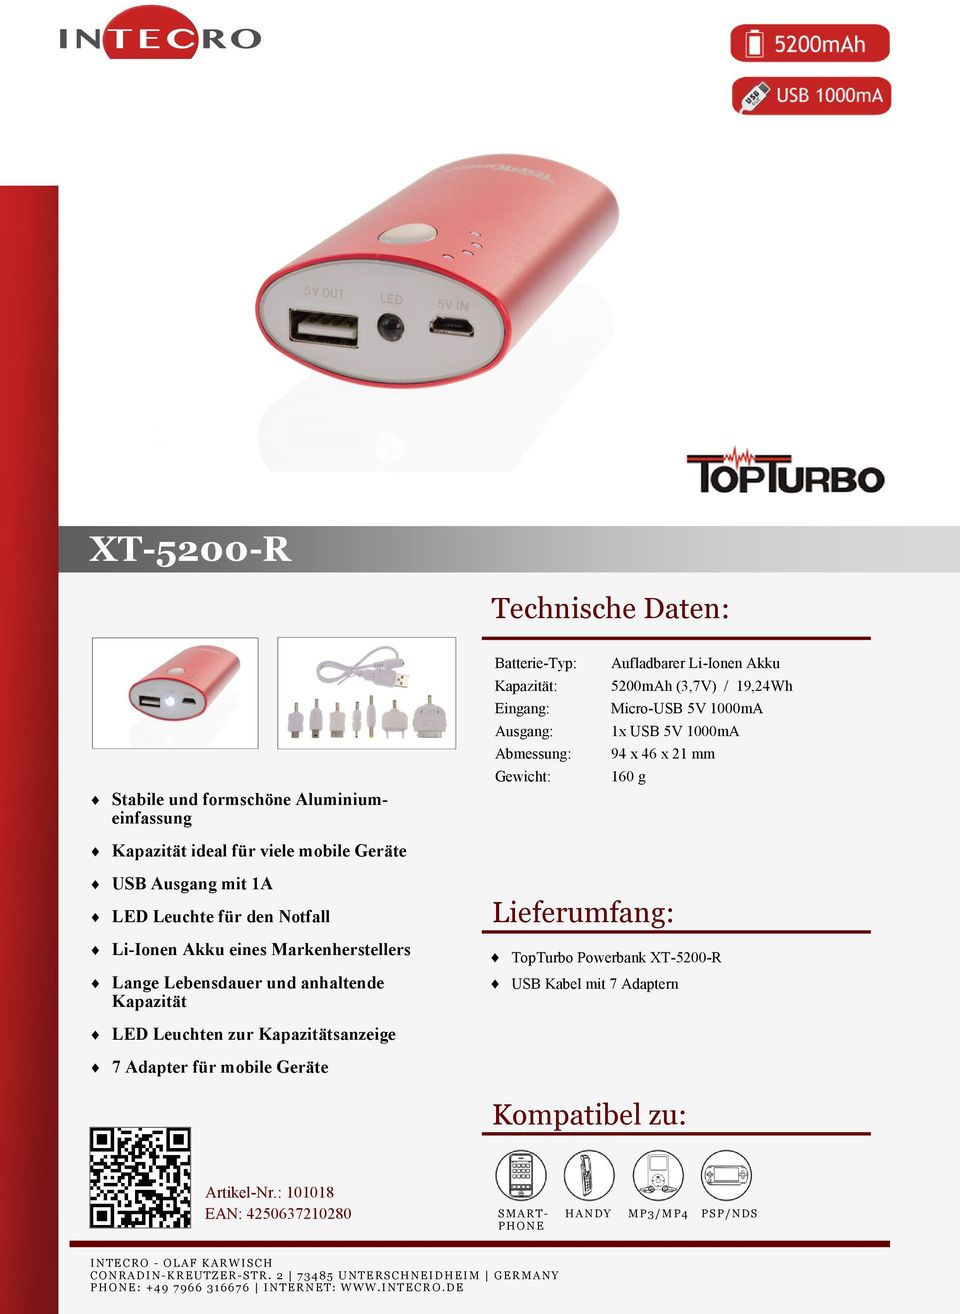 Notfall Li-Ionen Akku eines Markenherstellers Lange Lebensdauer und anhaltende Kapazität TopTurbo Powerbank XT-5200-R USB